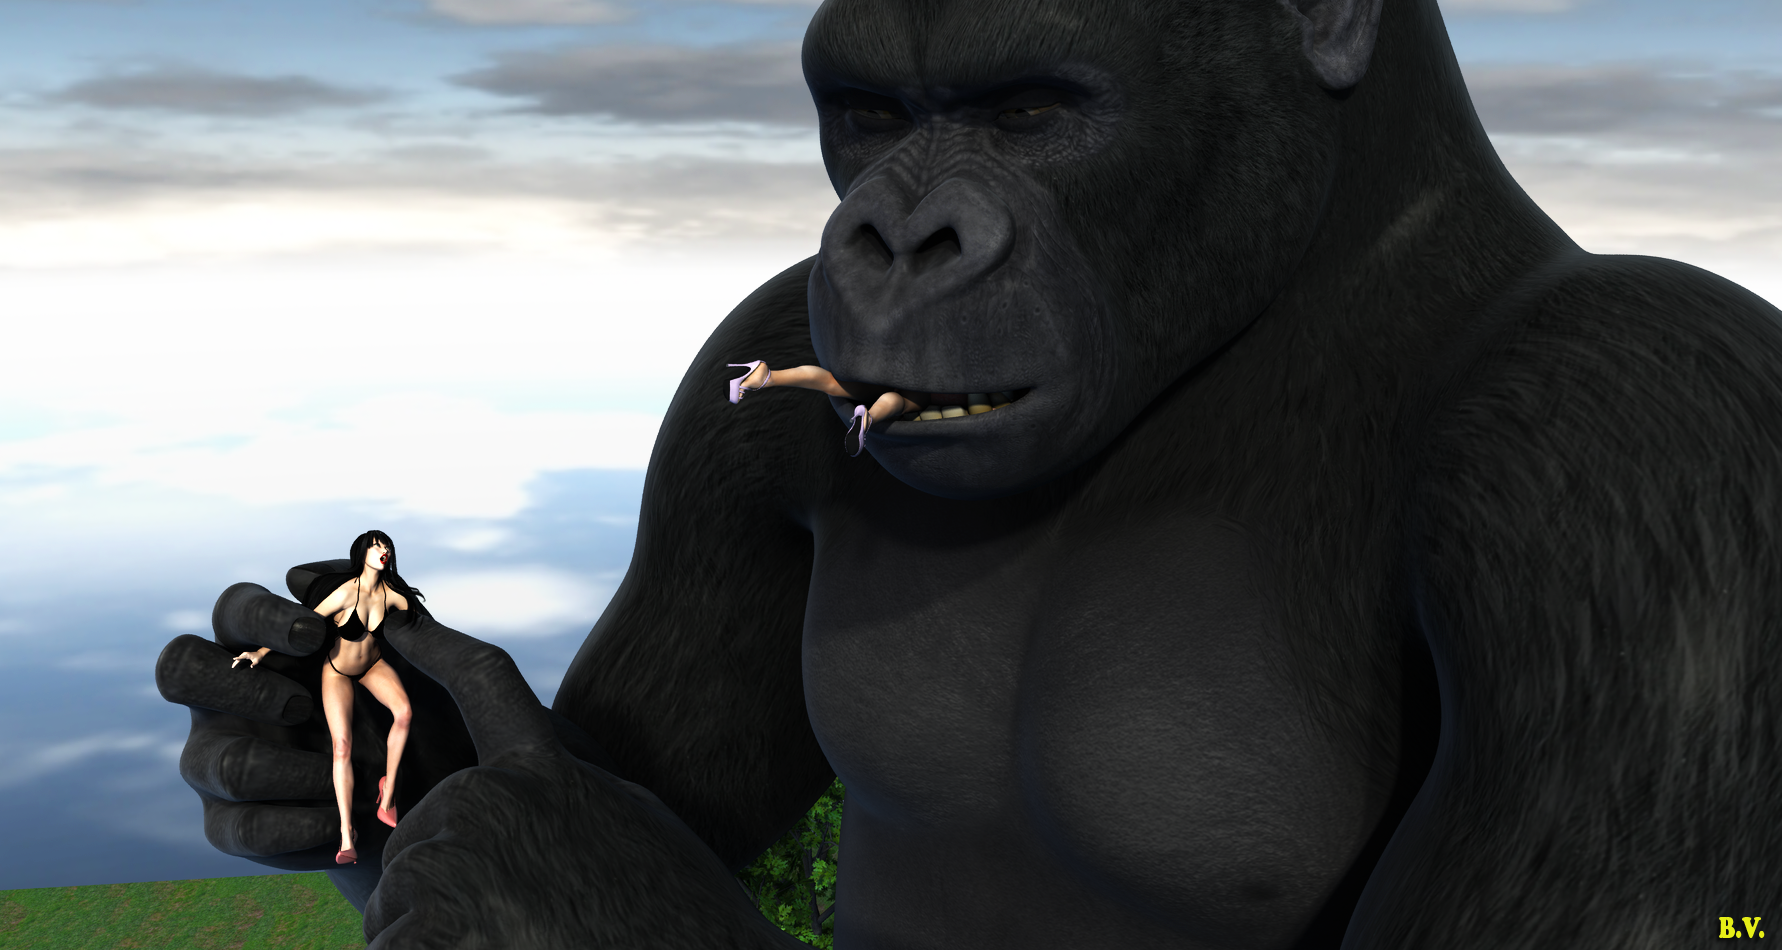 King Kong Vore Returns 6 By Bobvan On DeviantArt.